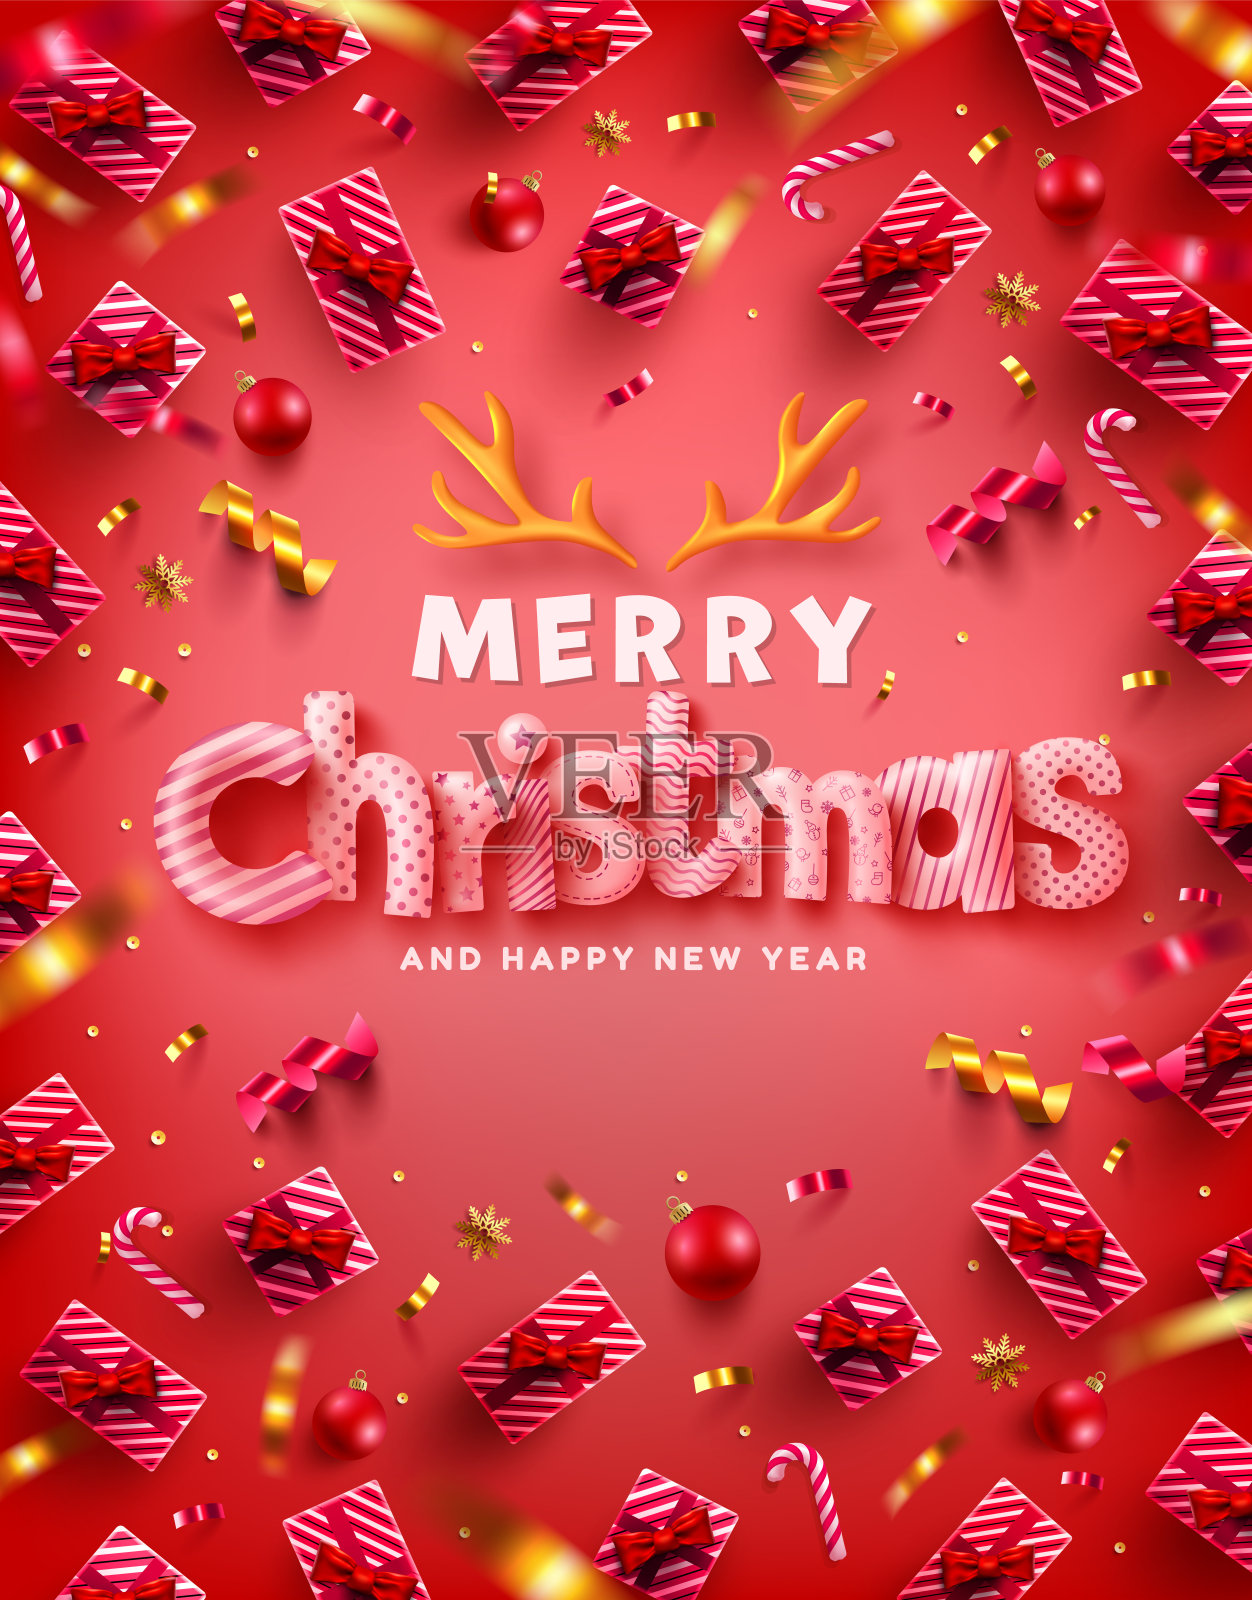 矢量圣诞快乐和新年快乐推广海报或横幅与许多礼盒和圣诞元素在红色背景零售，购物或圣诞促销在红色和金色风格。插画图片素材